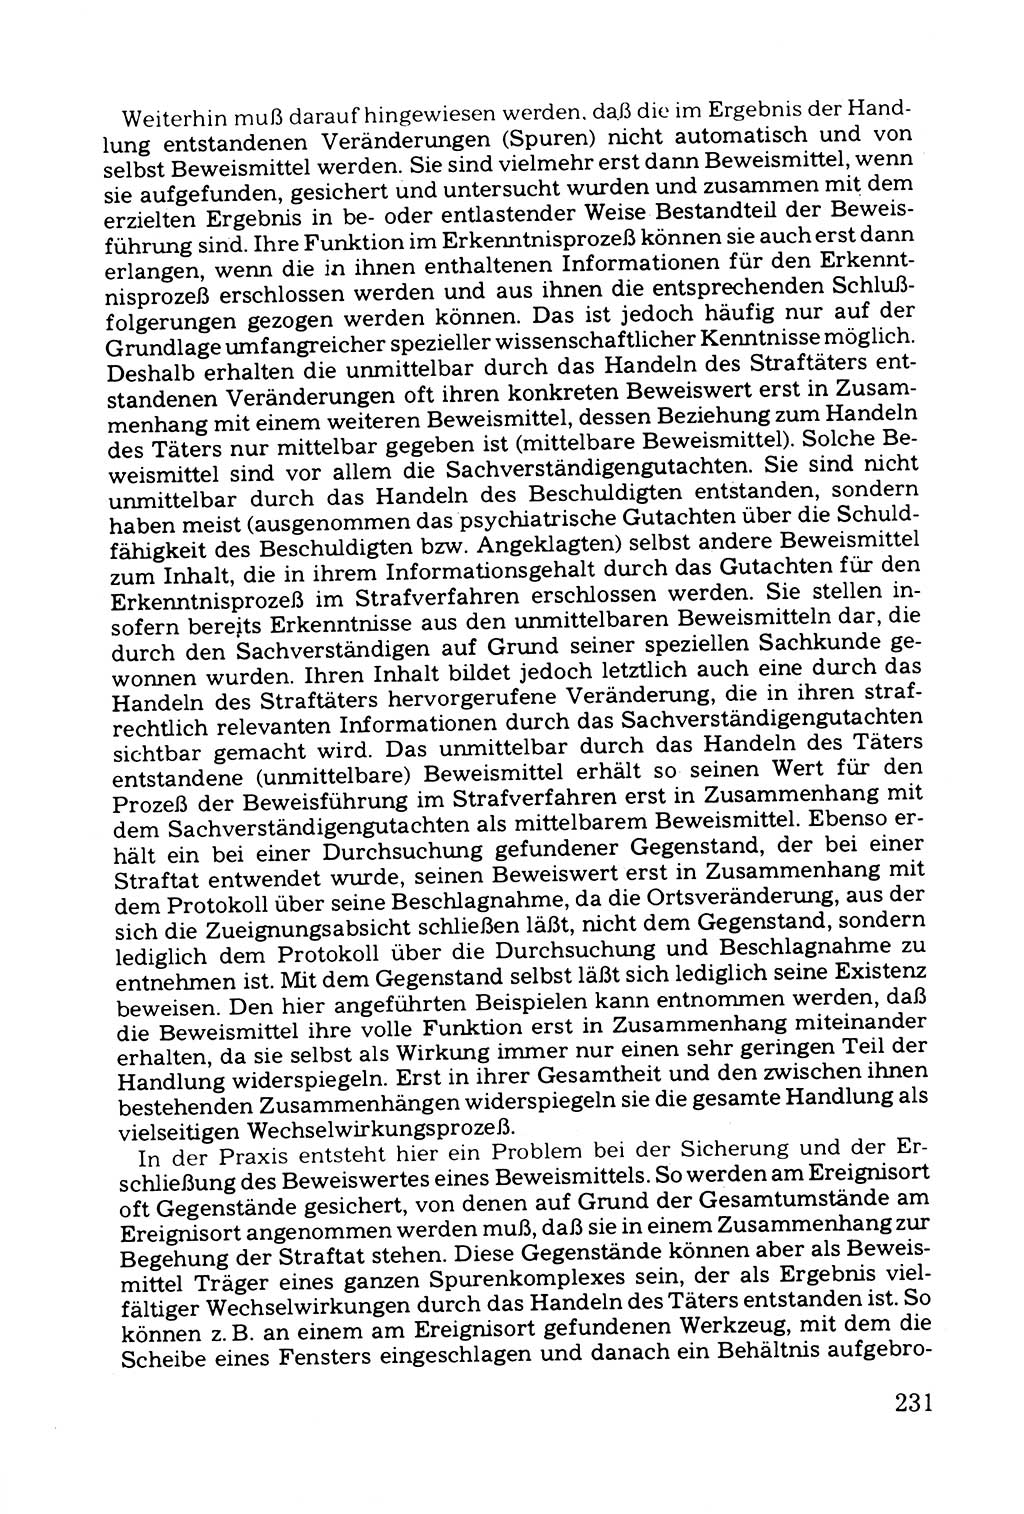 Grundfragen der Beweisführung im Ermittlungsverfahren [Deutsche Demokratische Republik (DDR)] 1980, Seite 231 (Bws.-Fhrg. EV DDR 1980, S. 231)